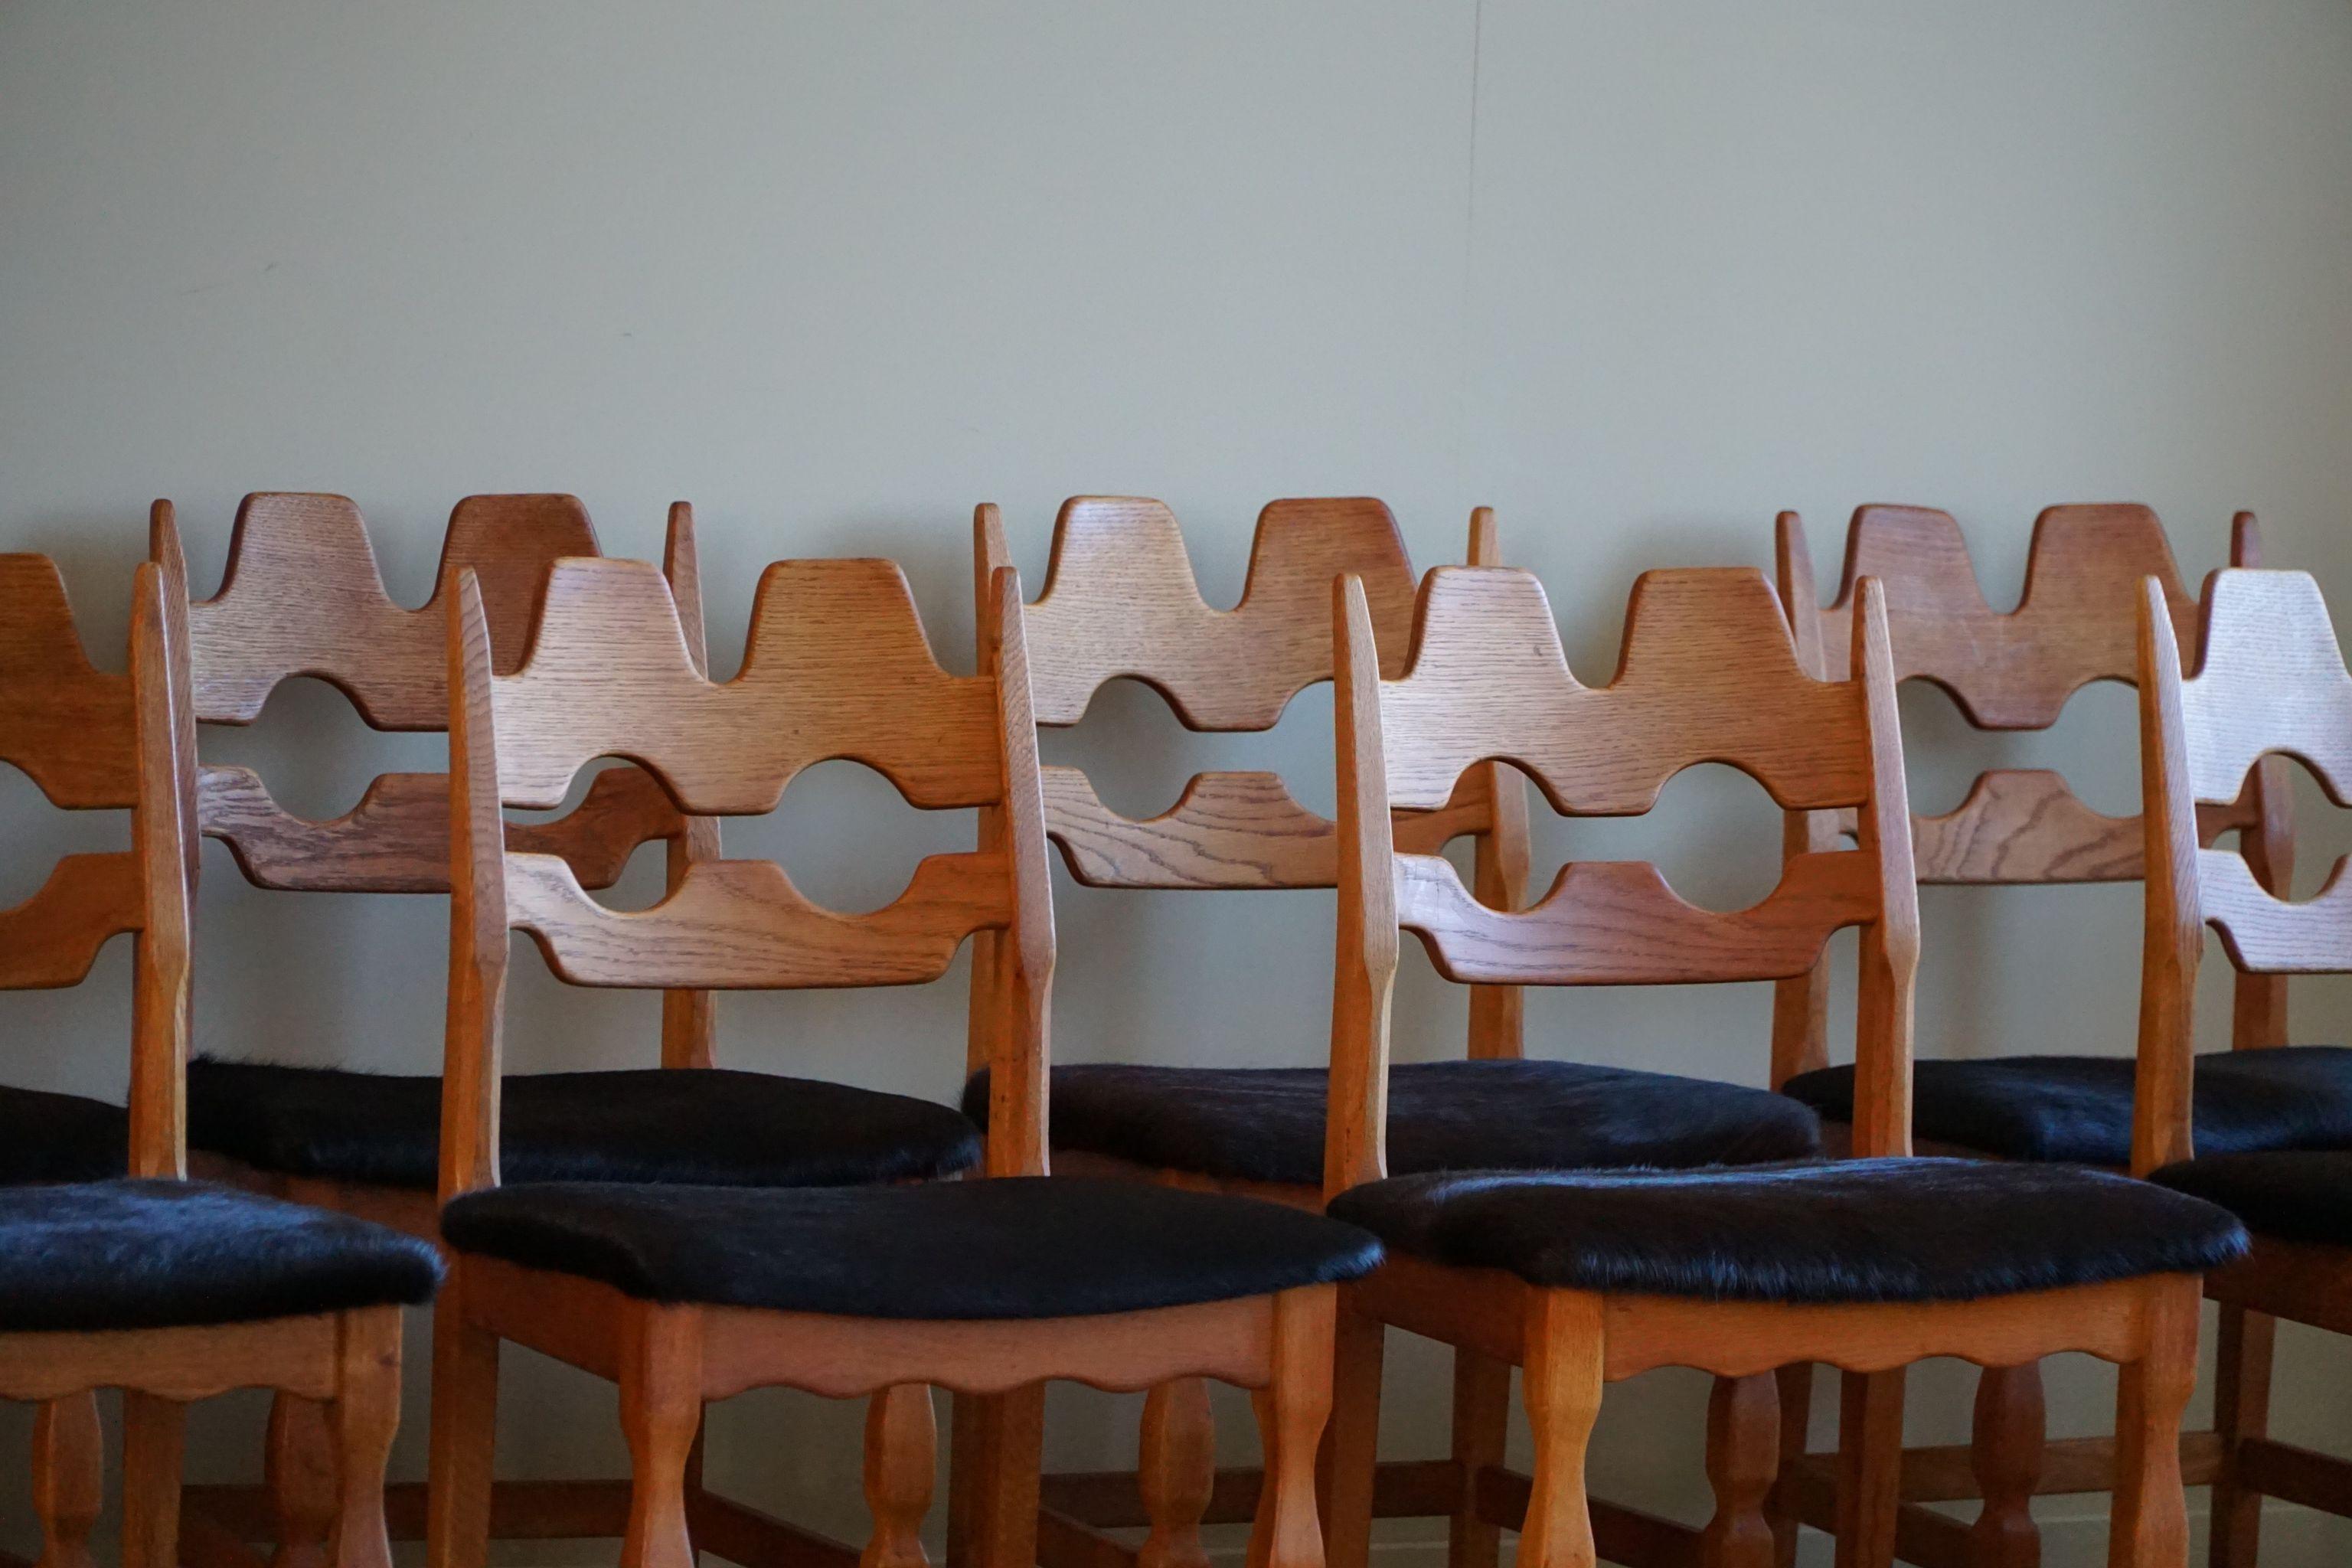 Un ensemble sculptural intrigant et populaire de 8 chaises de salle à manger classiques en chêne, dont les sièges sont recouverts d'une peau de vache noire de qualité. Conçu par Henning (Henry) Kjærnulf pour Nyrup Møbelfabrik - vers les années 1960.